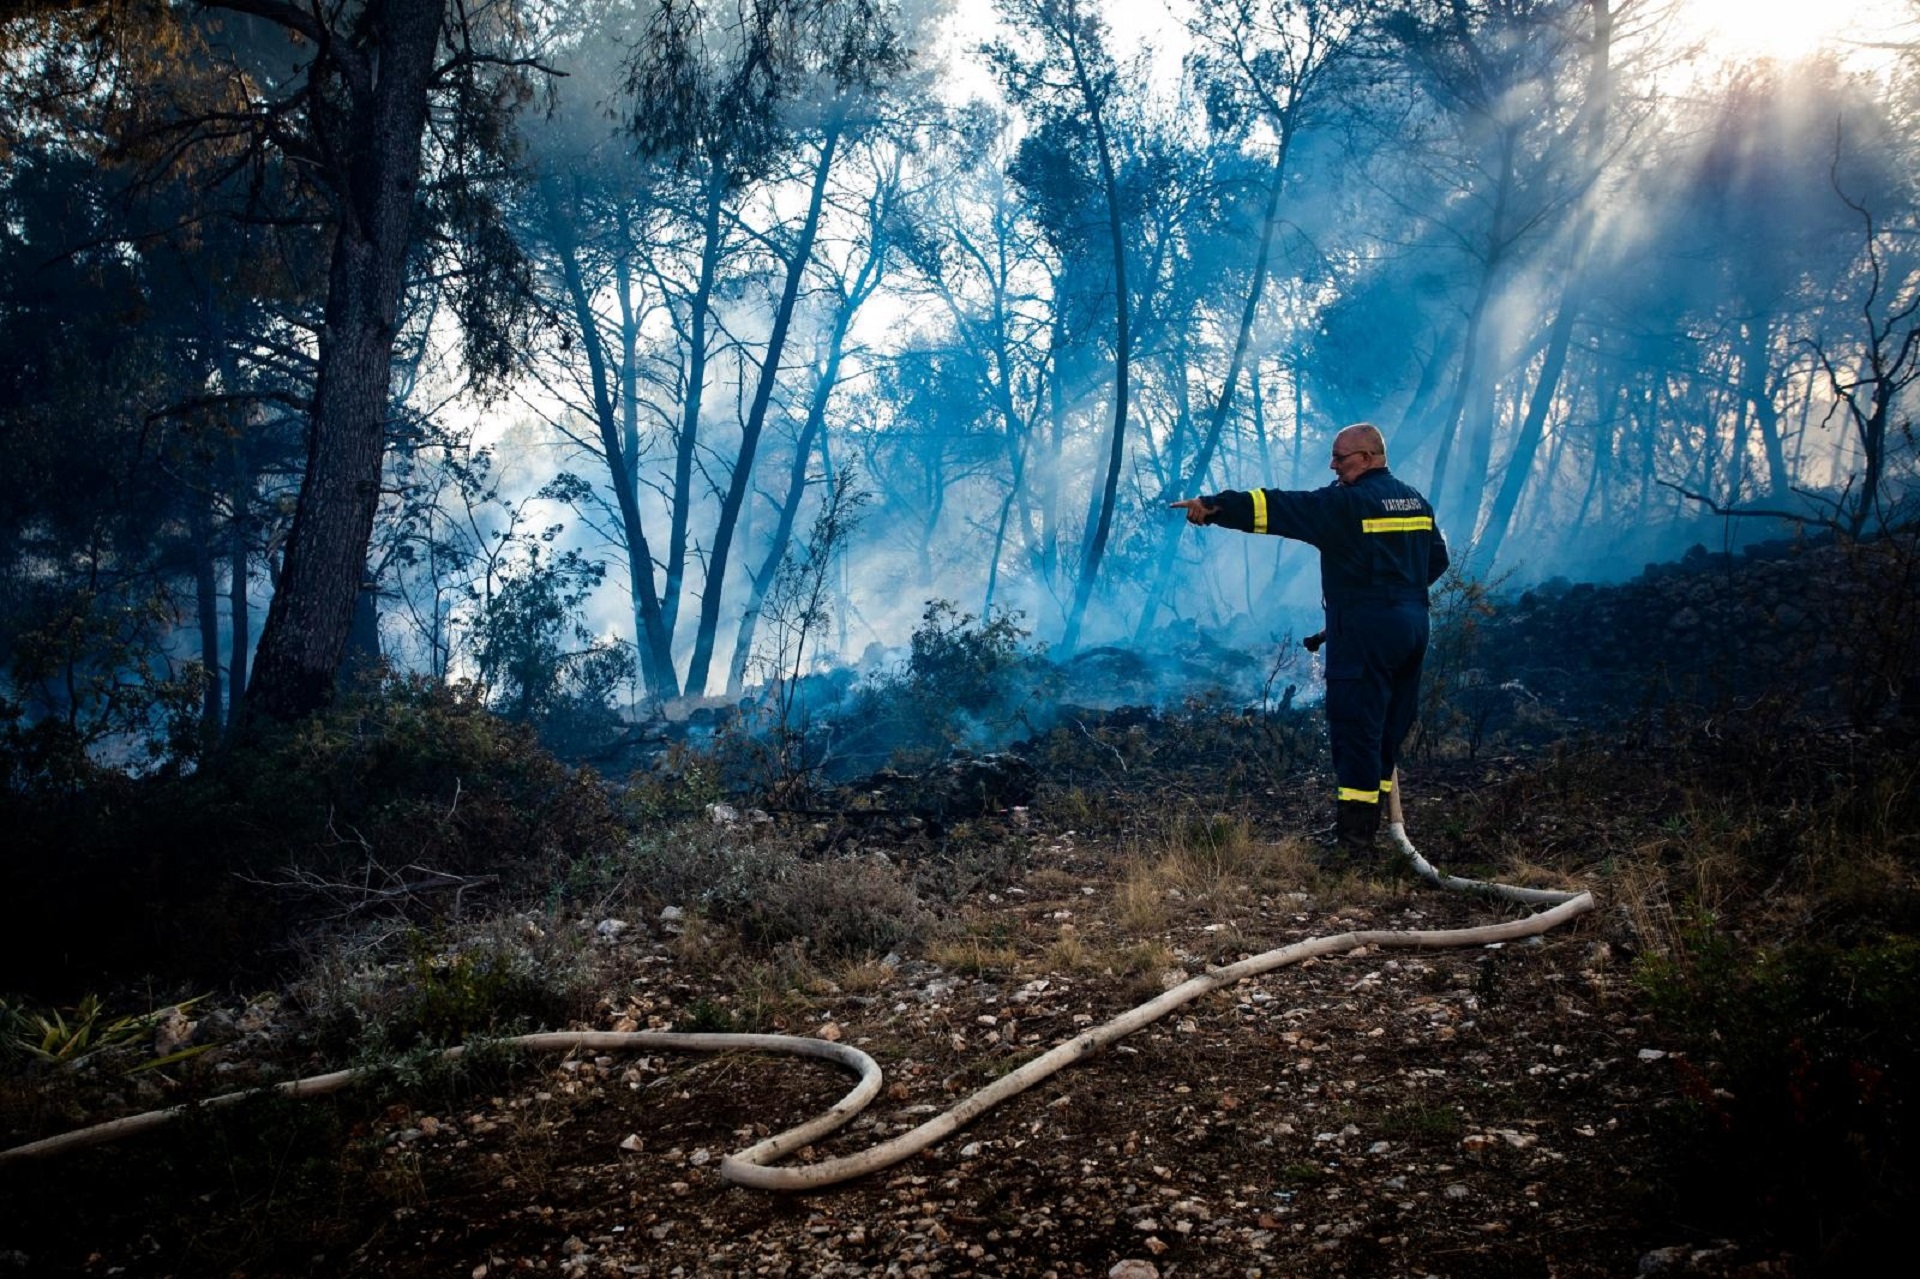 13.09.2020., Otok Ciovo - Vatrogasci gase pozar koji je u popodnevnim satima buknuo pored kuca na otoku Ciovu.
Photo: Milan Sabic/PIXSELL